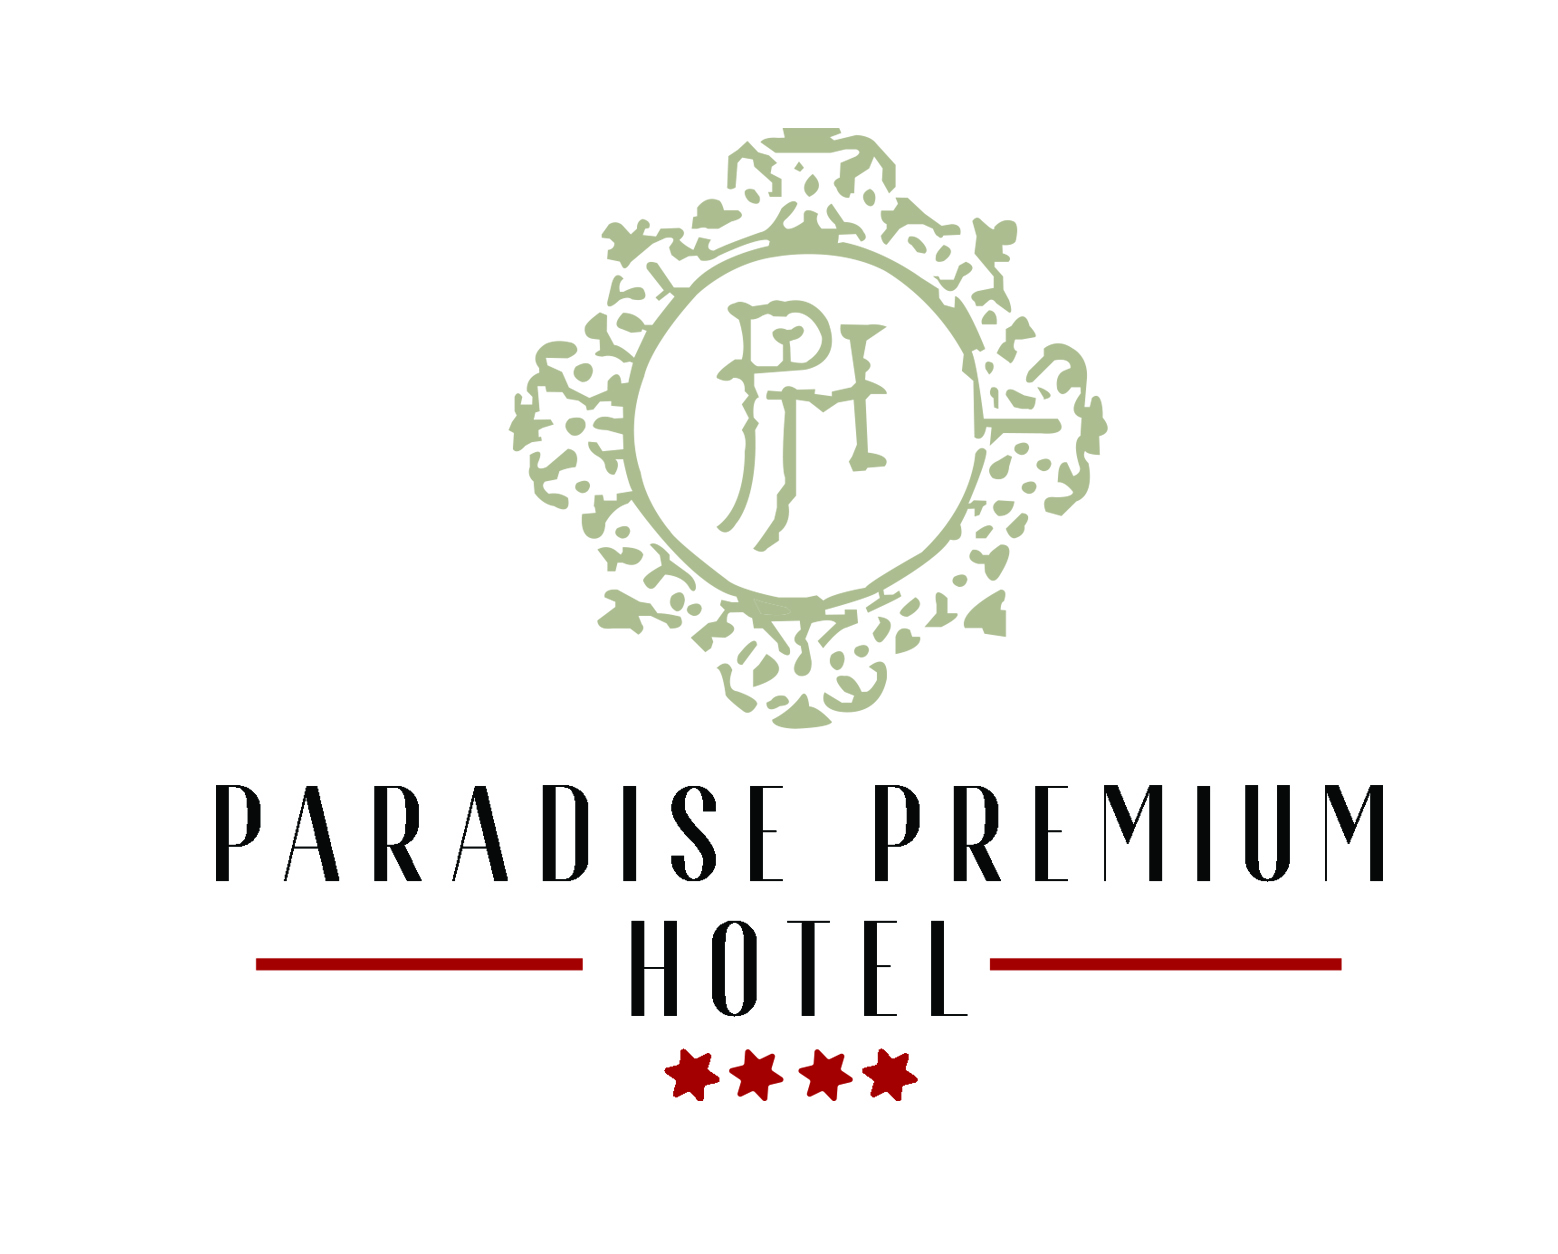 Paradise Premium Hotel